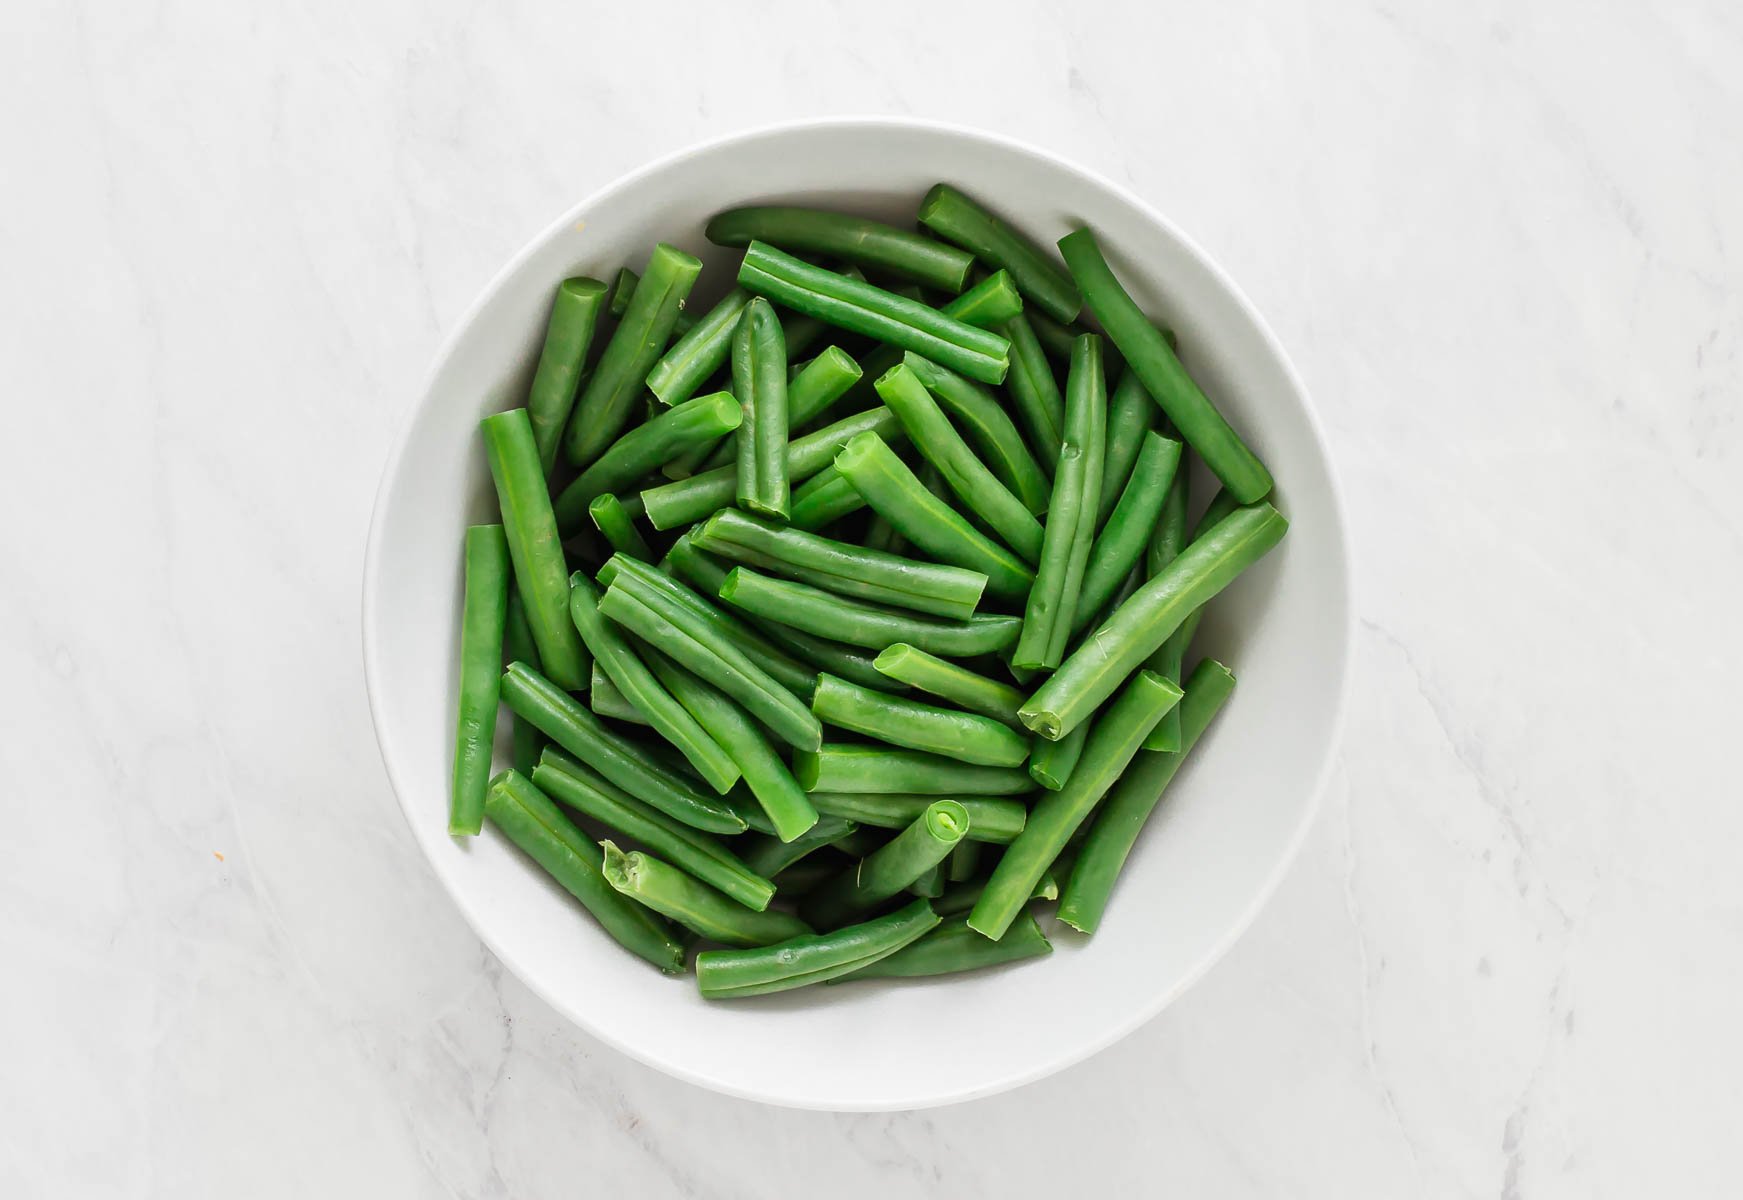 Freshly steamed green beans in white bowl.